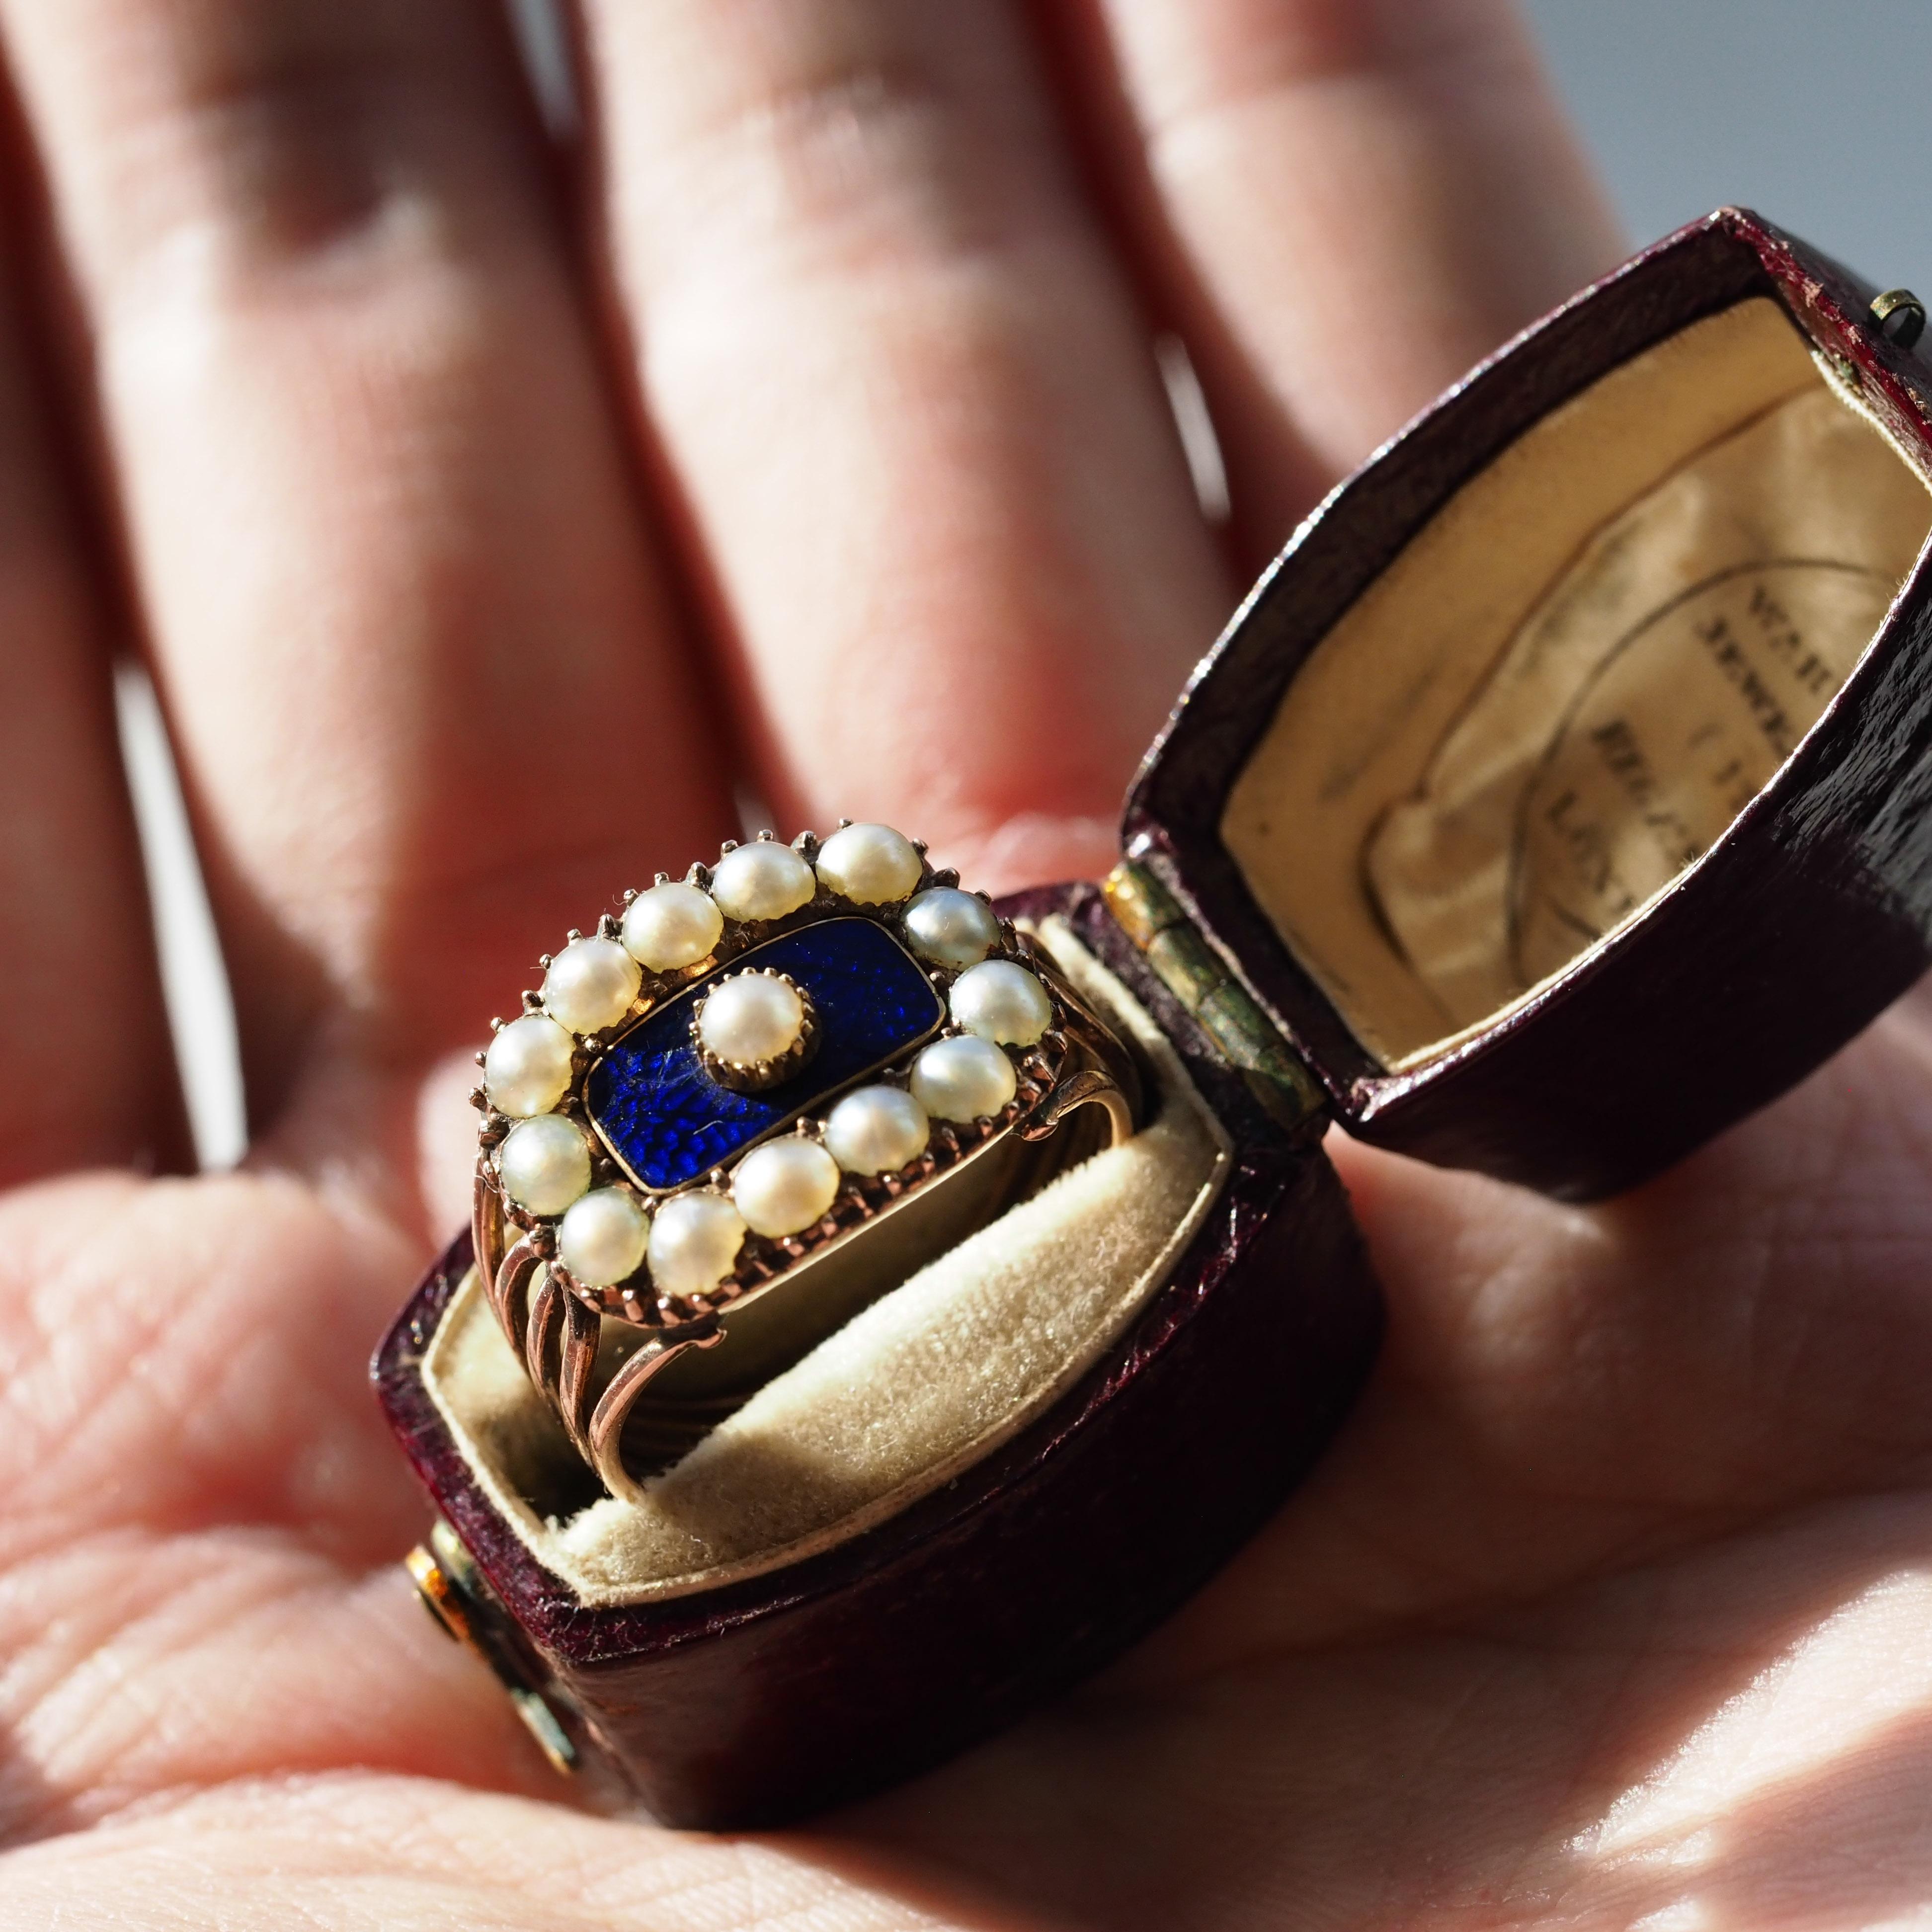 Wir freuen uns, diesen exquisiten antiken georgianischen Ring aus der Zeit um 1800 anbieten zu können. 
 
Dieser Ring wird mit der dazugehörigen Schatulle geliefert (in der Auflistung enthalten) und ist ein wunderbares Beispiel für feinen